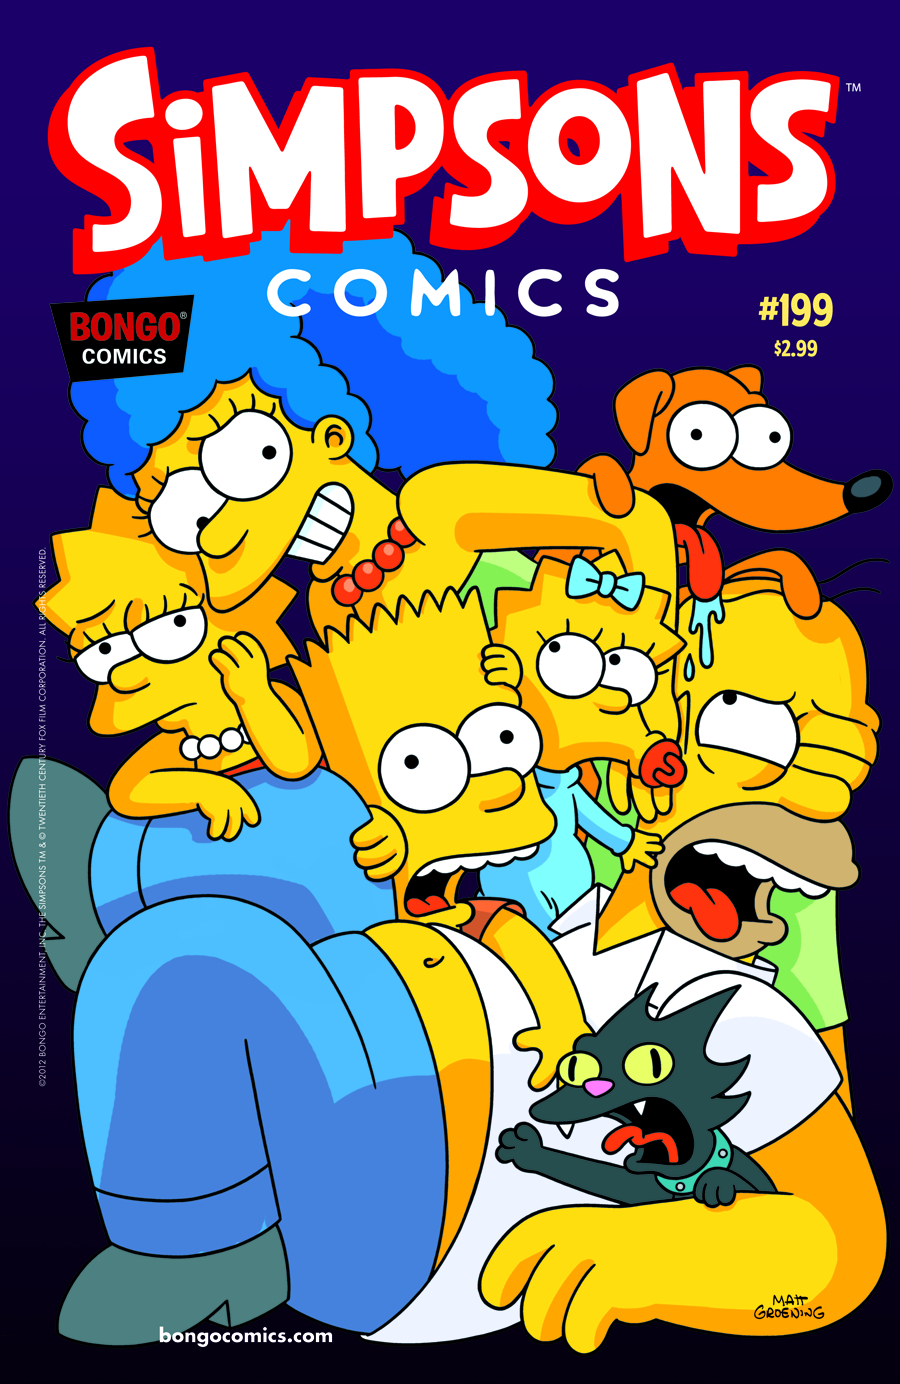 SIMPSONS COMICS #199 (DEC120897) .